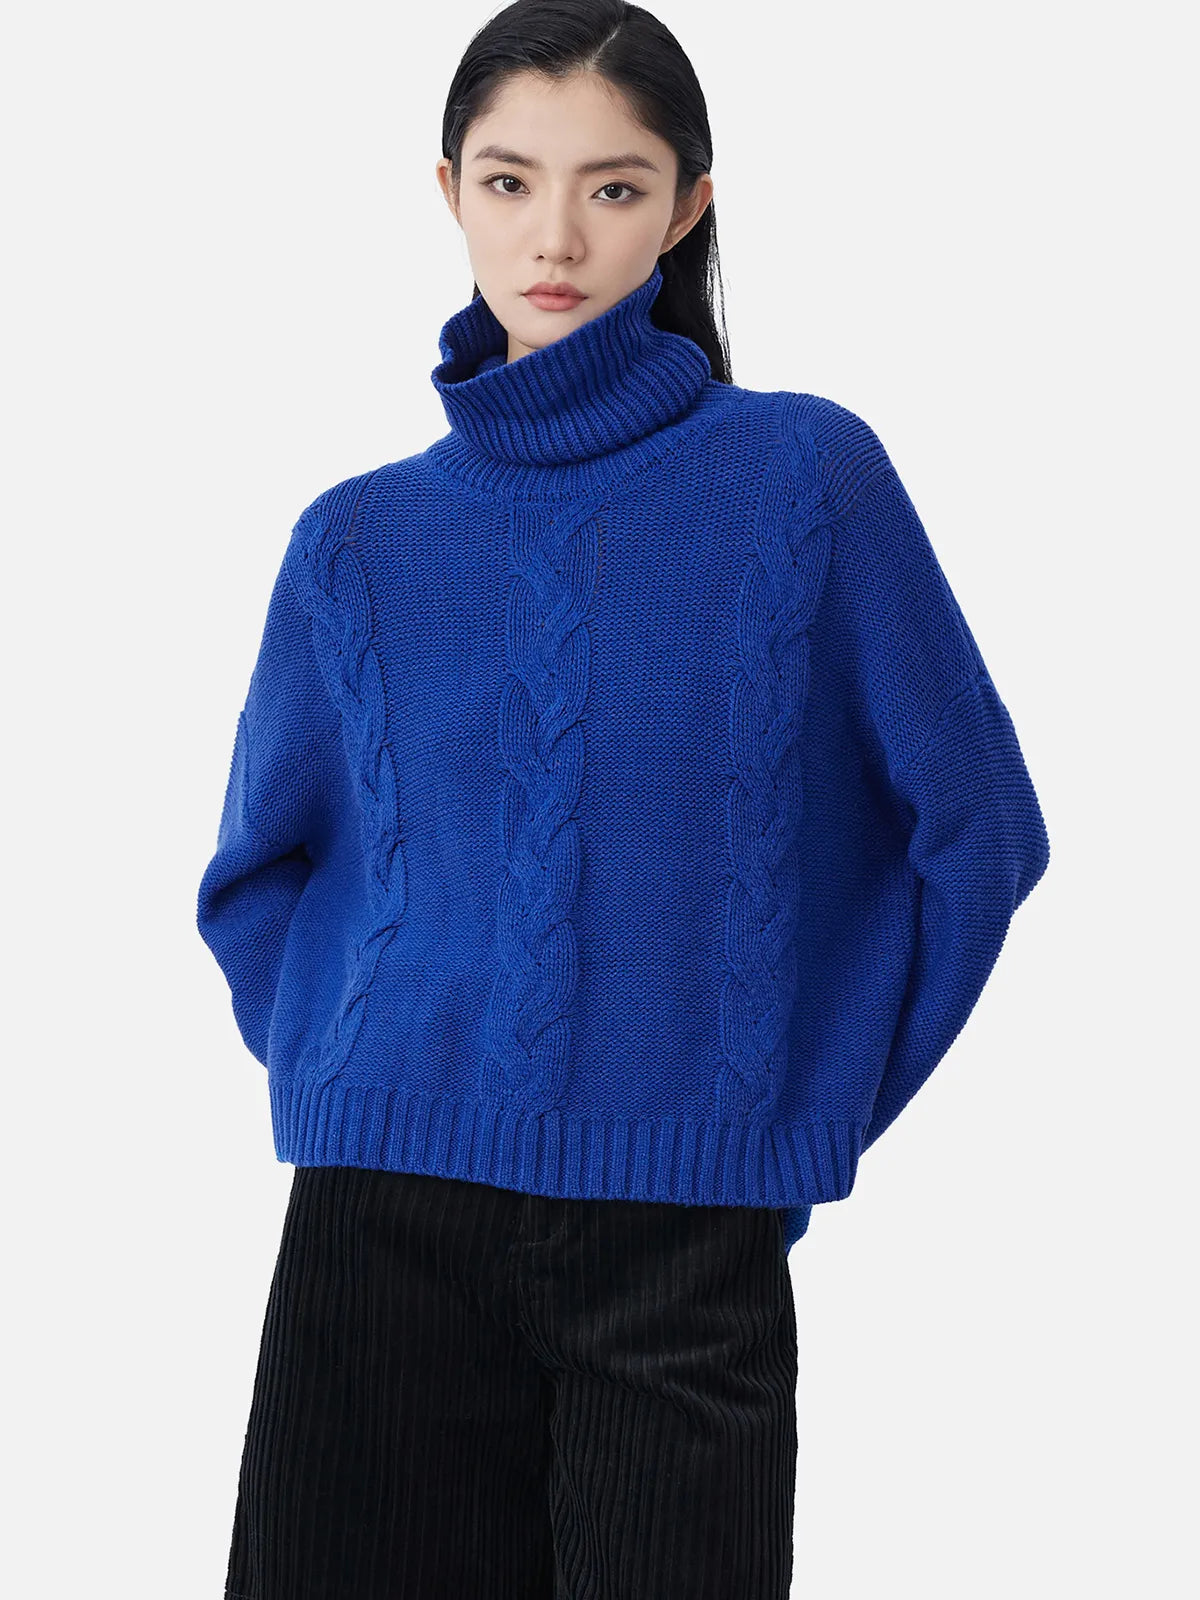 Trendy Turtleneck Dropped Shoulder Knit Sweater